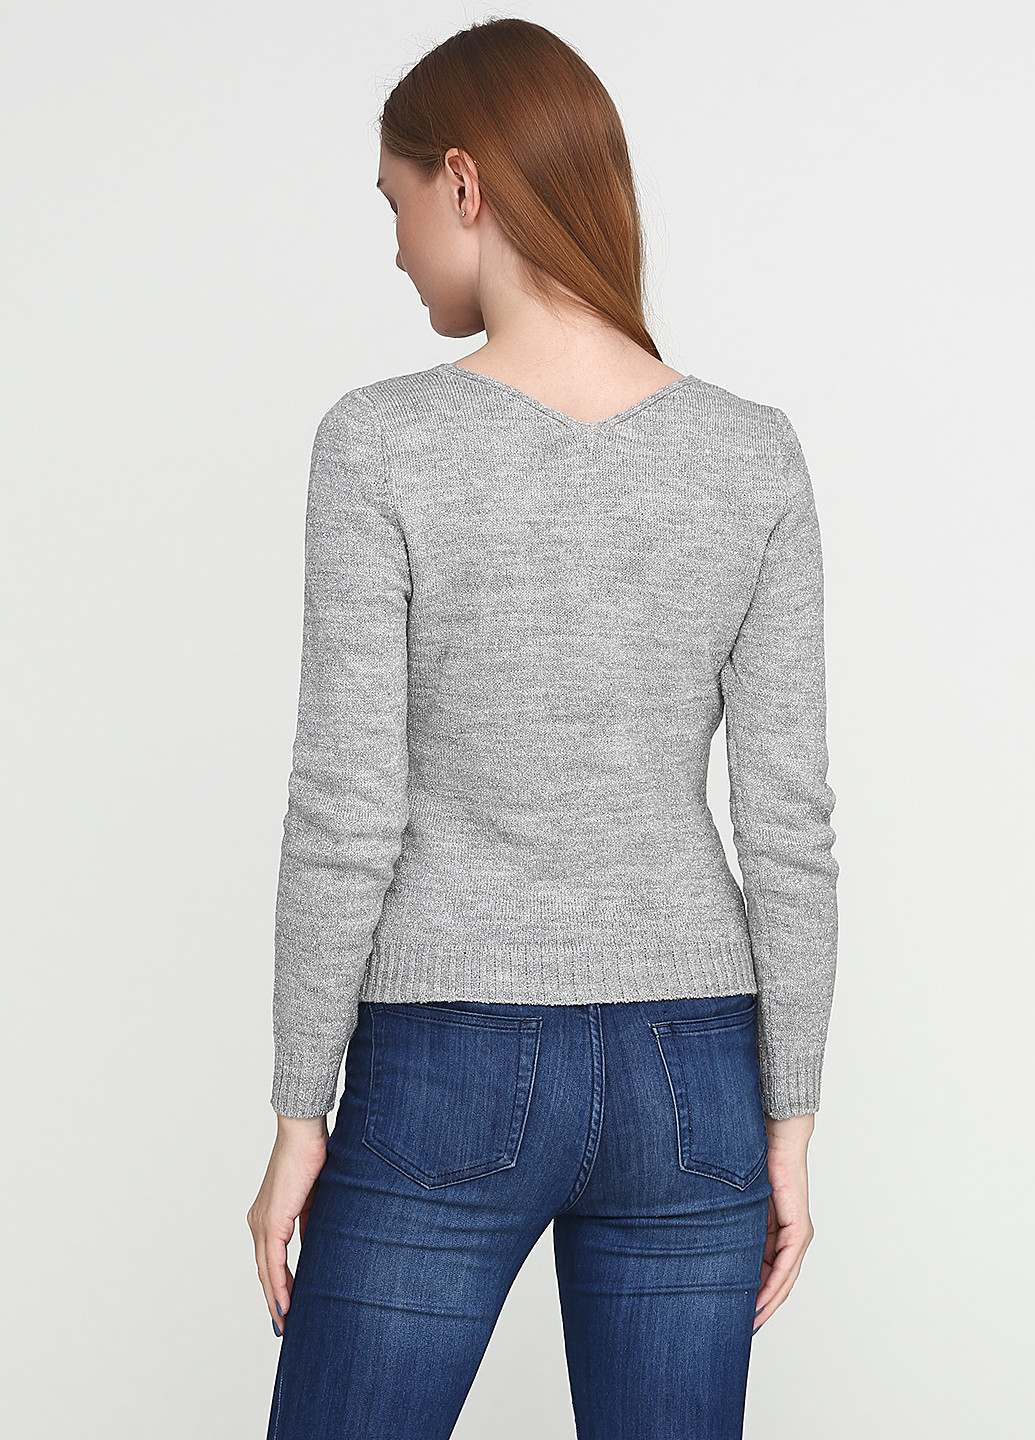 Светло-серый демисезонный пуловер пуловер Folgore Milano